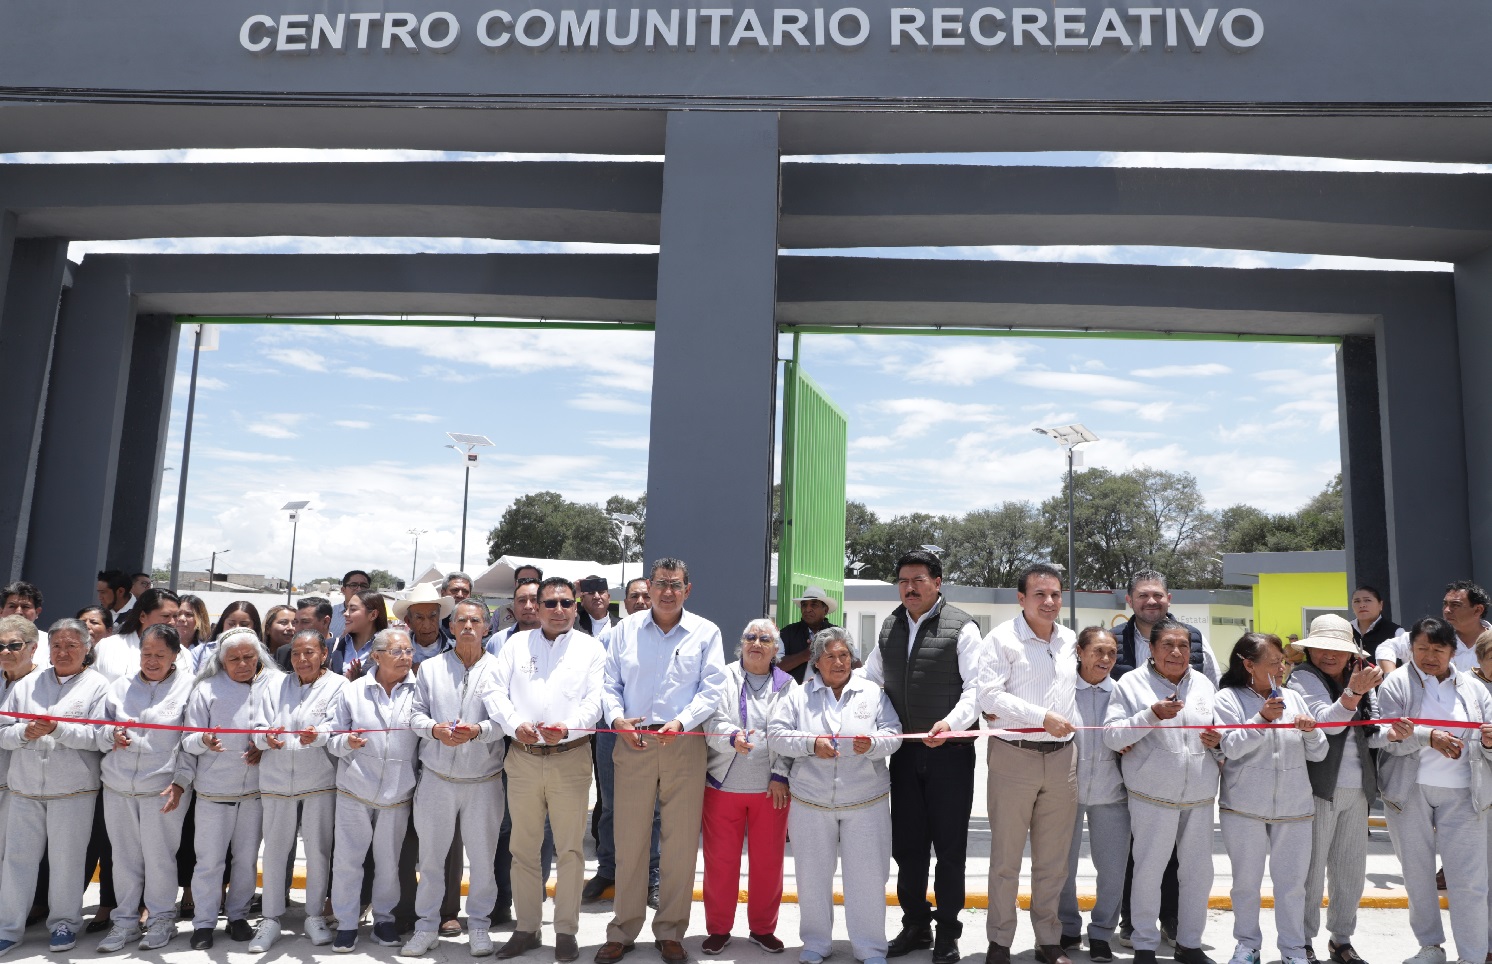 Céspedes inauguró un Centro Comunitario Recreativo en Acajete